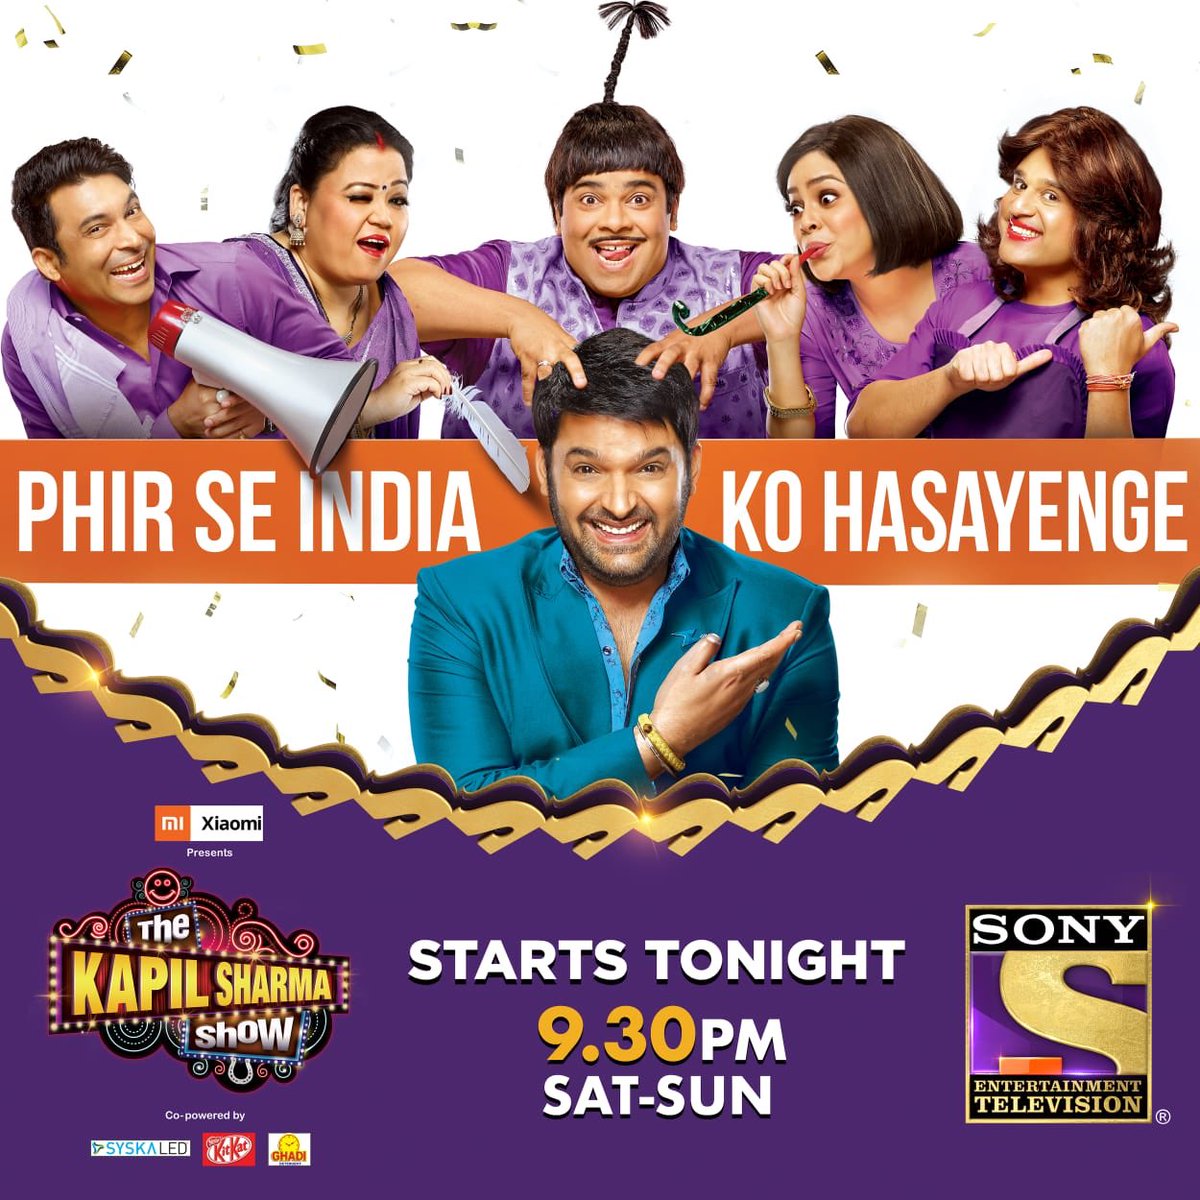 Iss weekend ki alag hi hai baat! Kyunki honge aapke saath, @KapilSharmaK9! Masti aur entertainment se bhara, dekhiye #TheKapilSharmaShow, aaj se har Sat-Sun raat 9:30 baje sirf @SonyTV par.